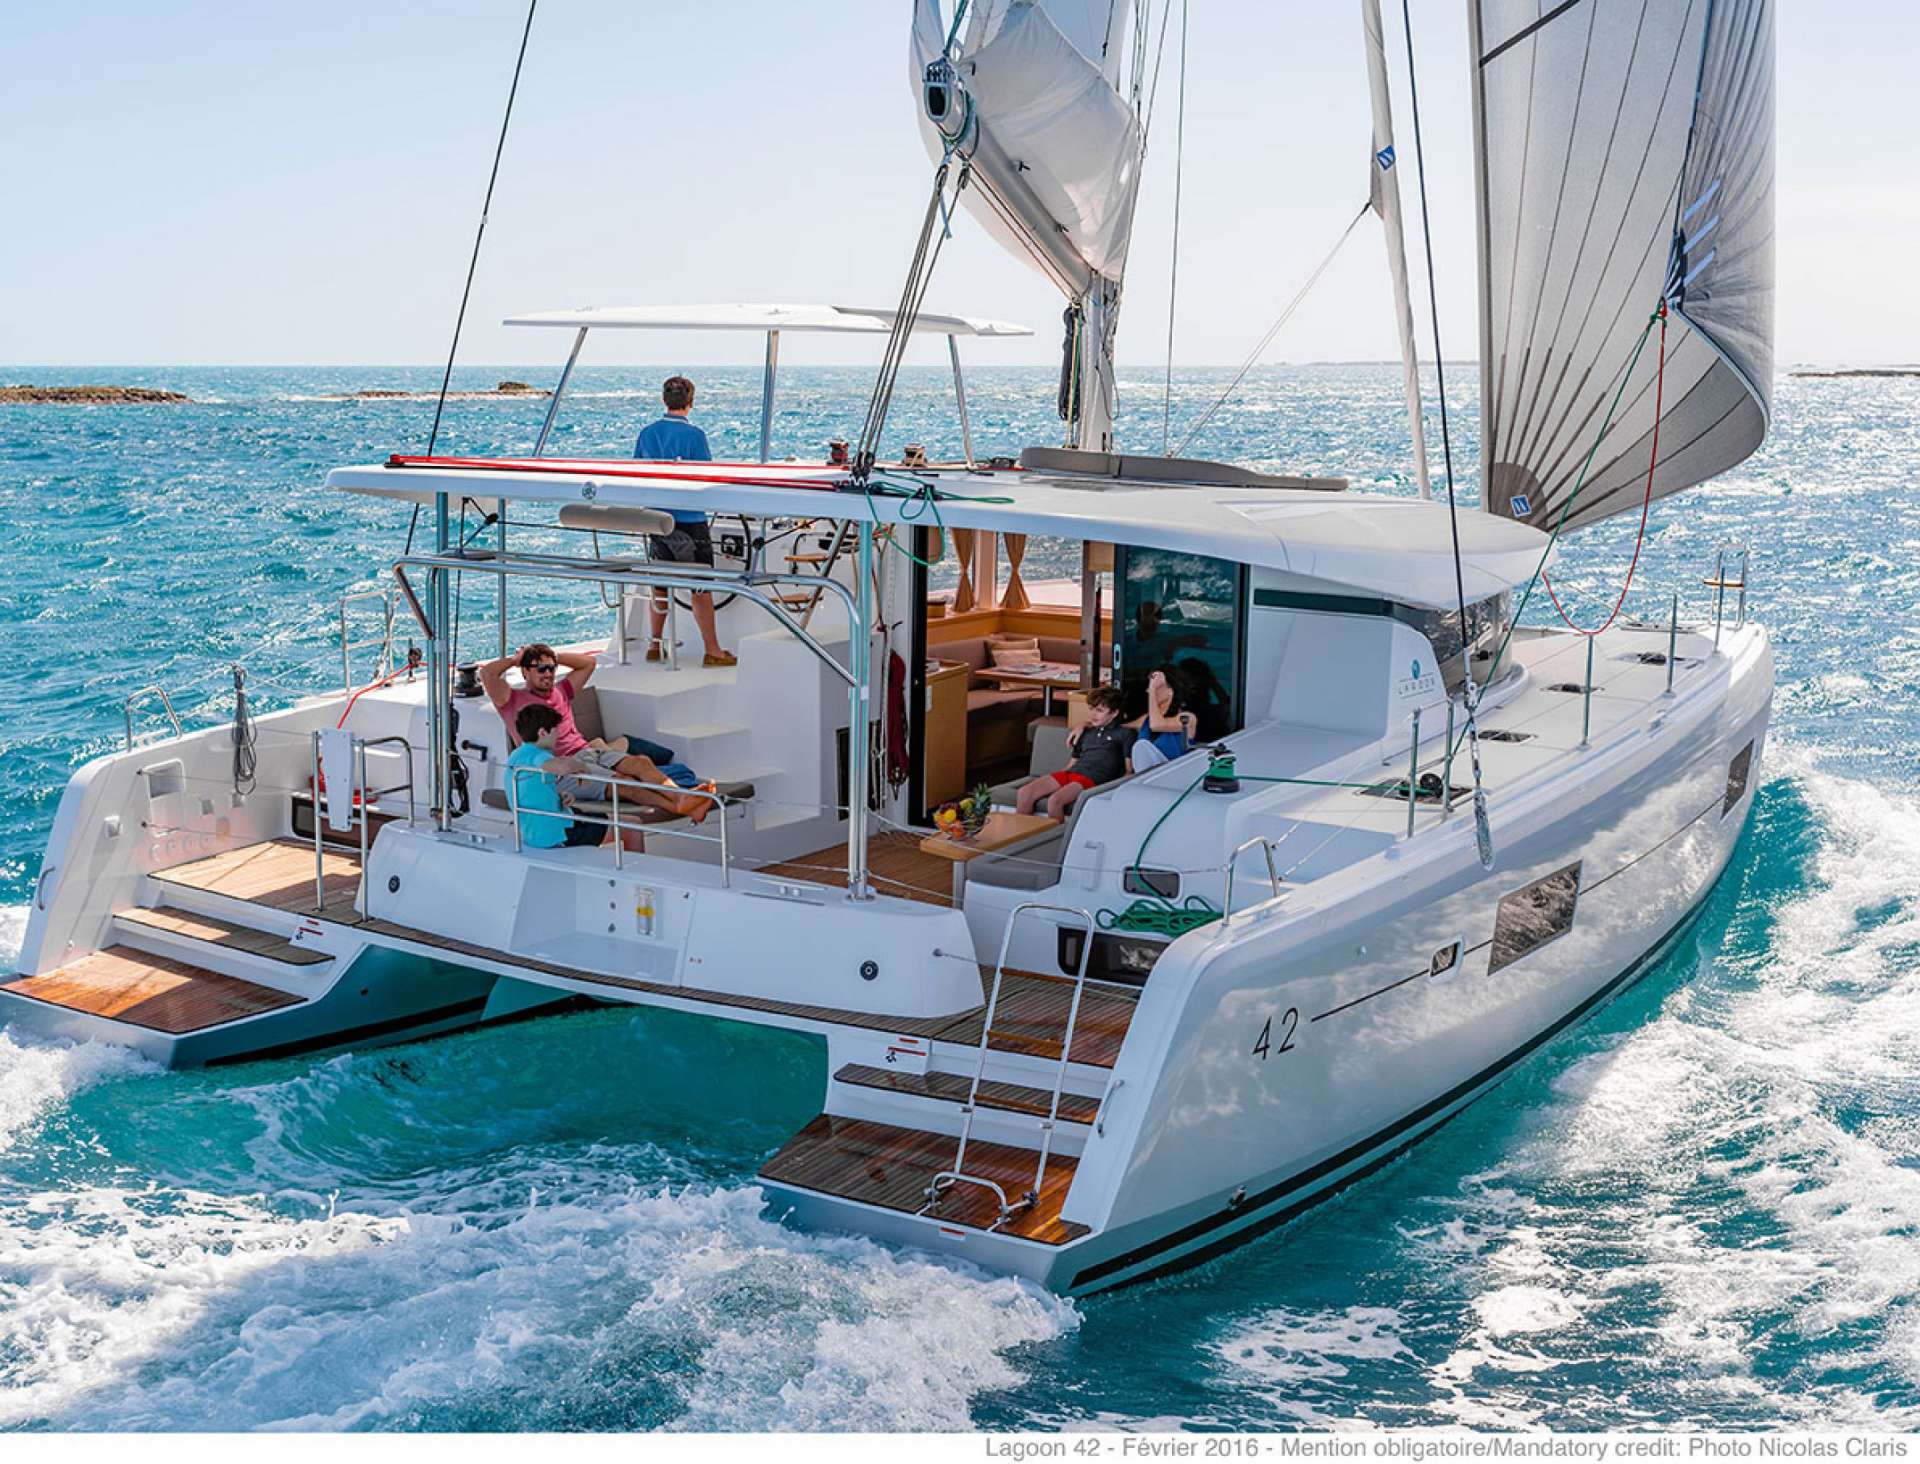 sunrise - Yacht Charter Sorrento & Boat hire in Fr. Riviera & Tyrrhenian Sea 3